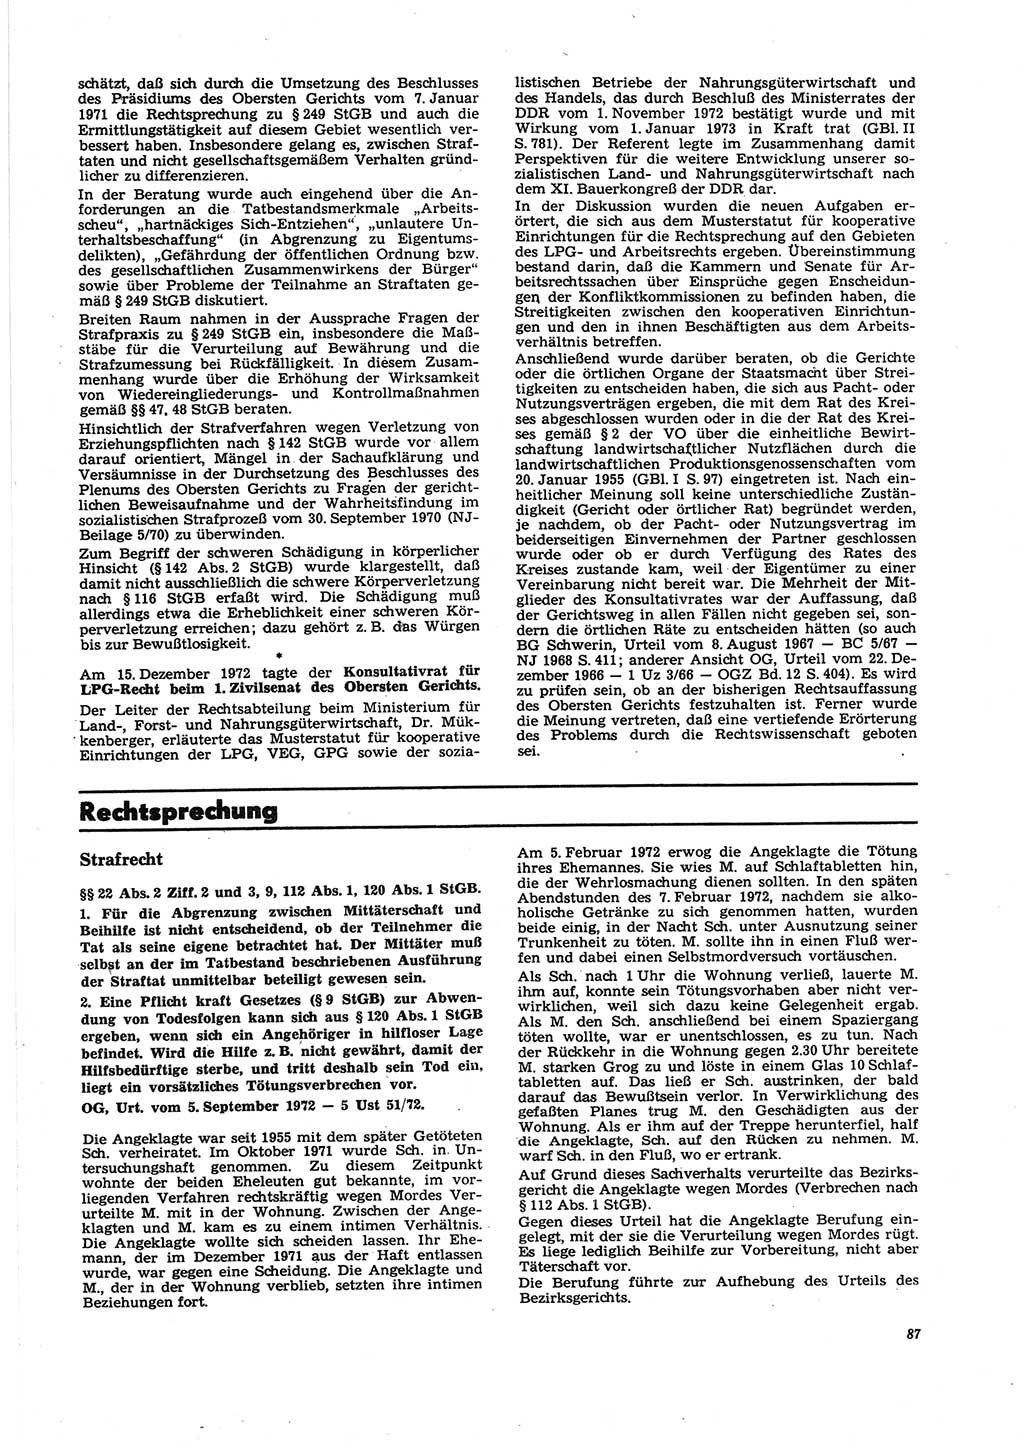 Neue Justiz (NJ), Zeitschrift für Recht und Rechtswissenschaft [Deutsche Demokratische Republik (DDR)], 27. Jahrgang 1973, Seite 87 (NJ DDR 1973, S. 87)